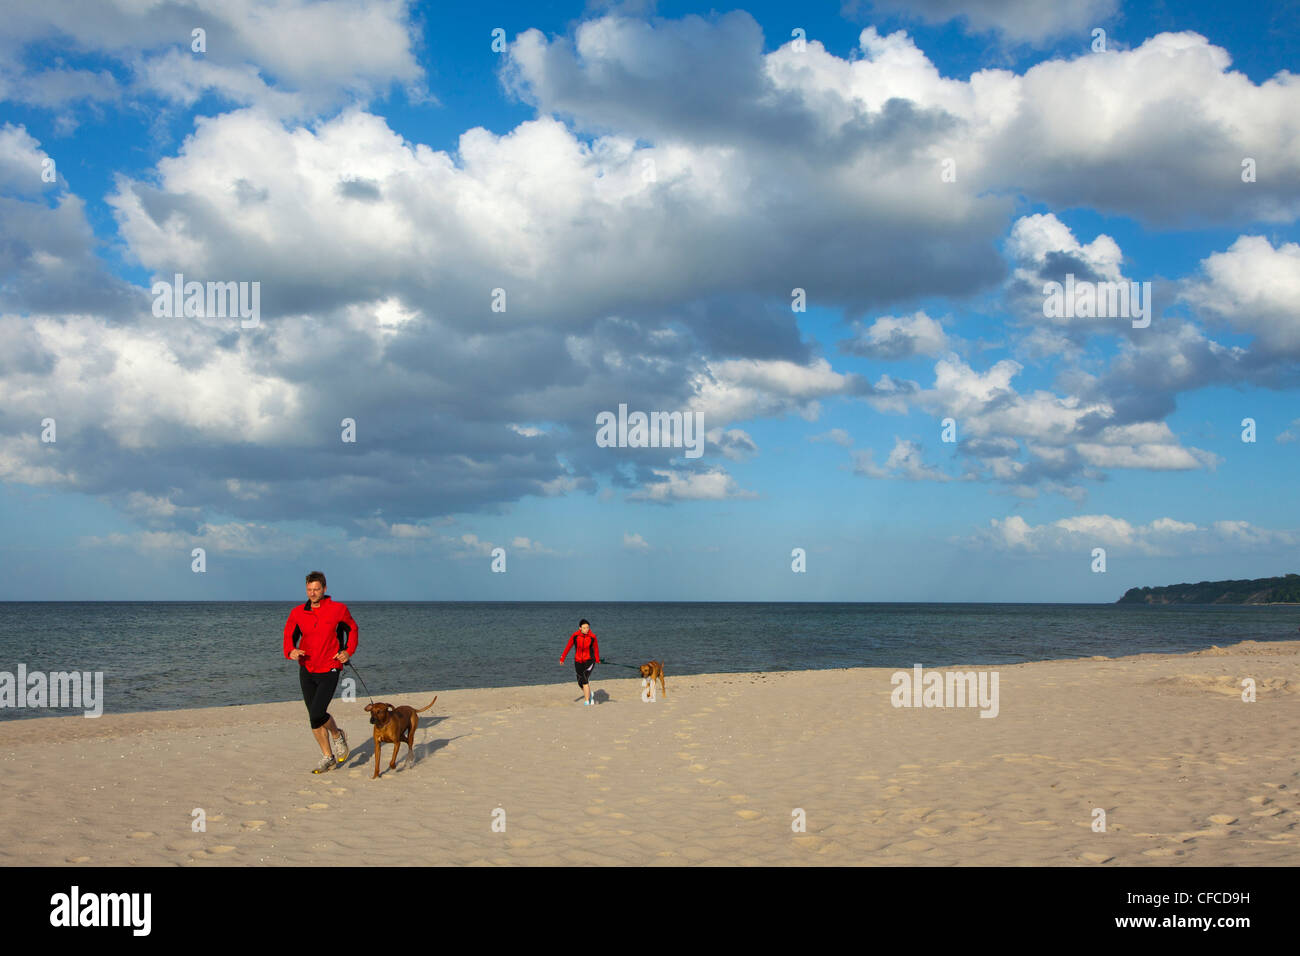 El hombre y la mujer correr con perros en la playa, balneario Baabe, Ruegen isla, Mar Báltico, Mecklenburg-West Pomerania, Germà Foto de stock